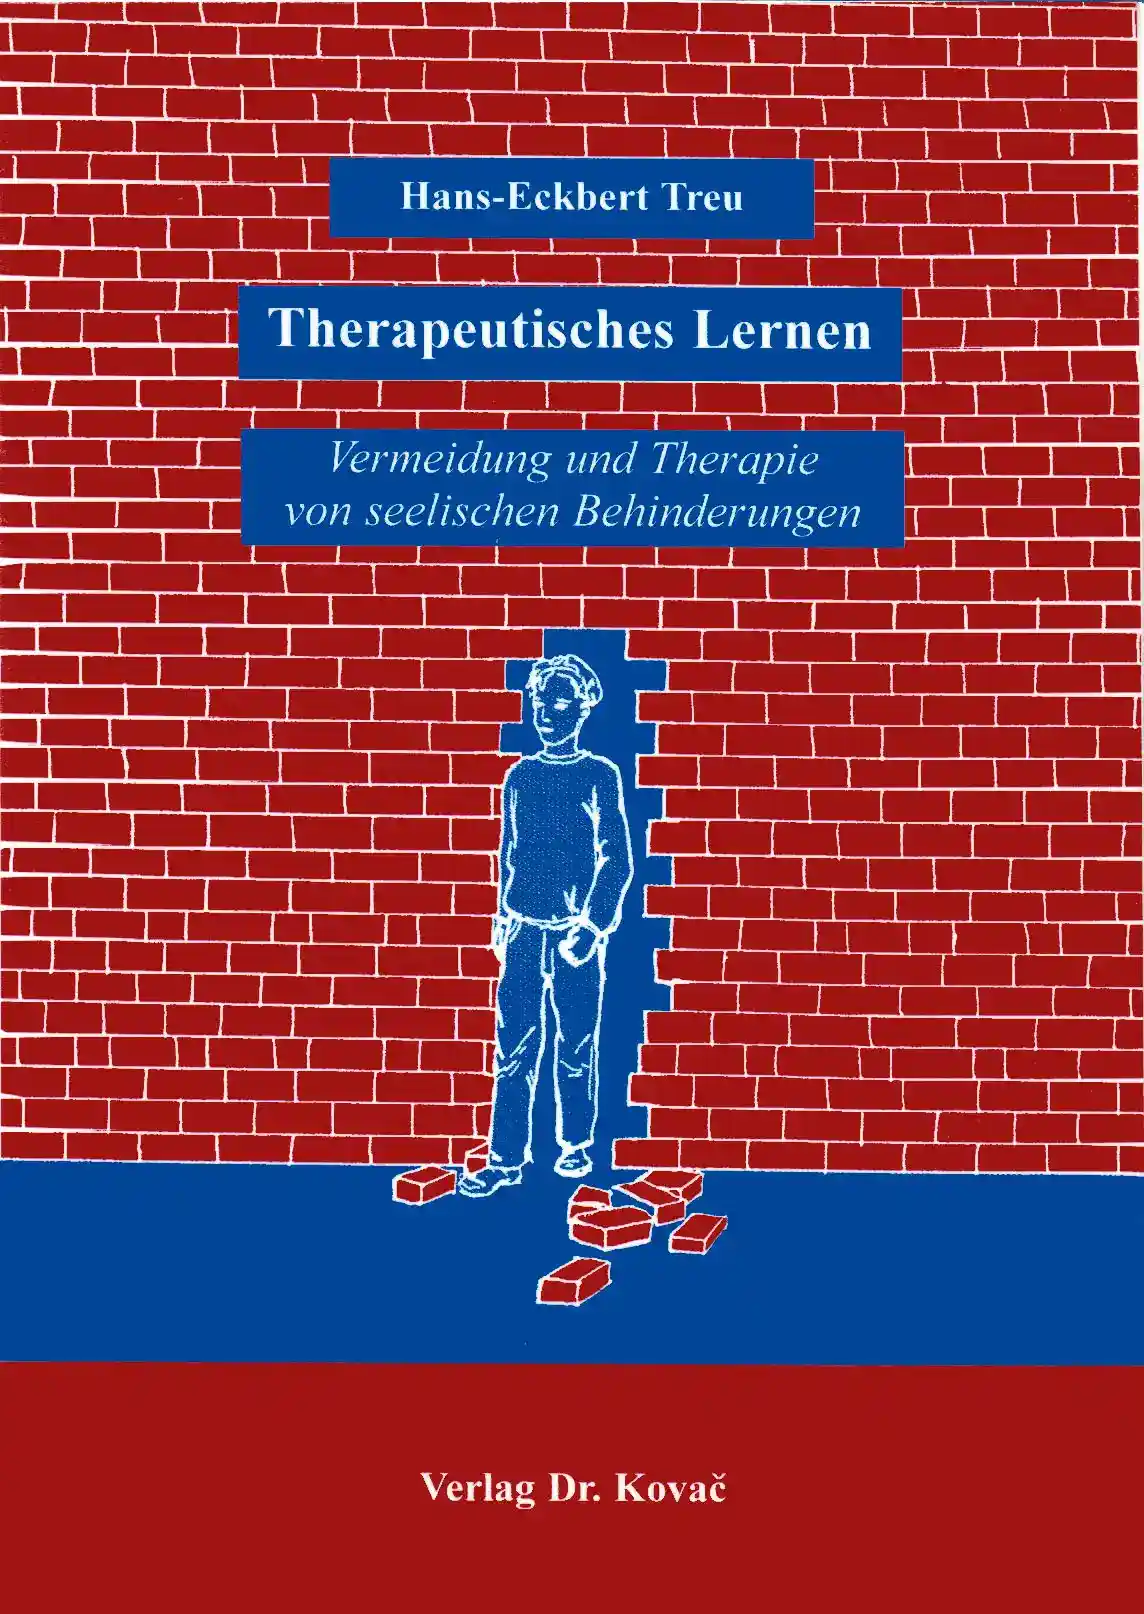 Therapeutisches Lernen (Forschungsarbeit)